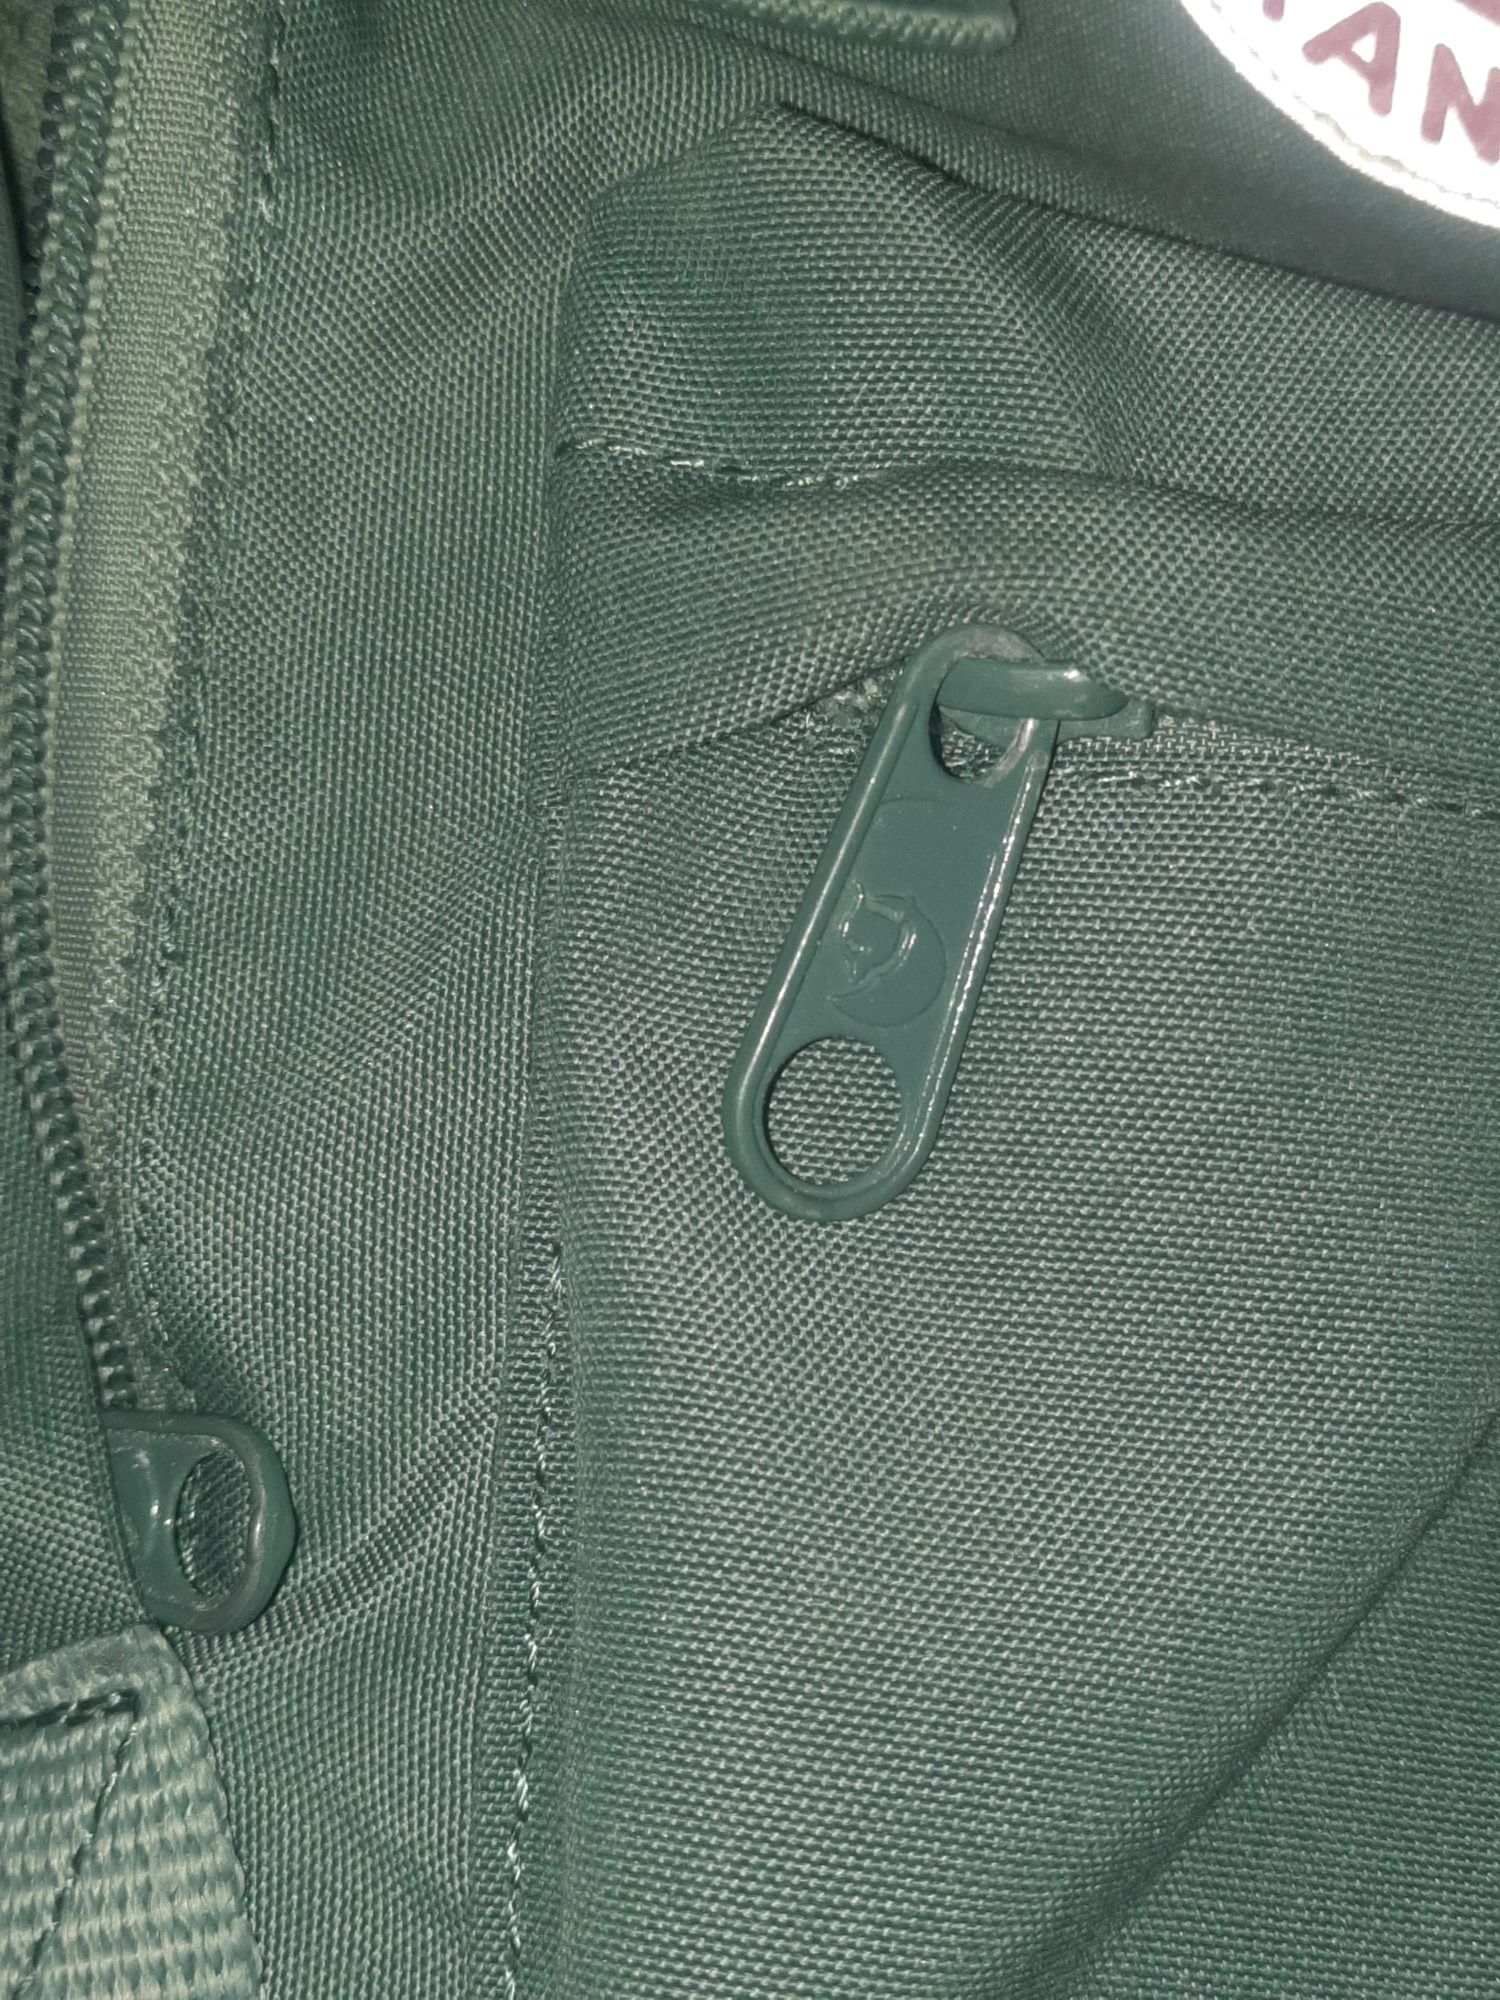 Mały plecak Fjallraven w zielonym kolorze